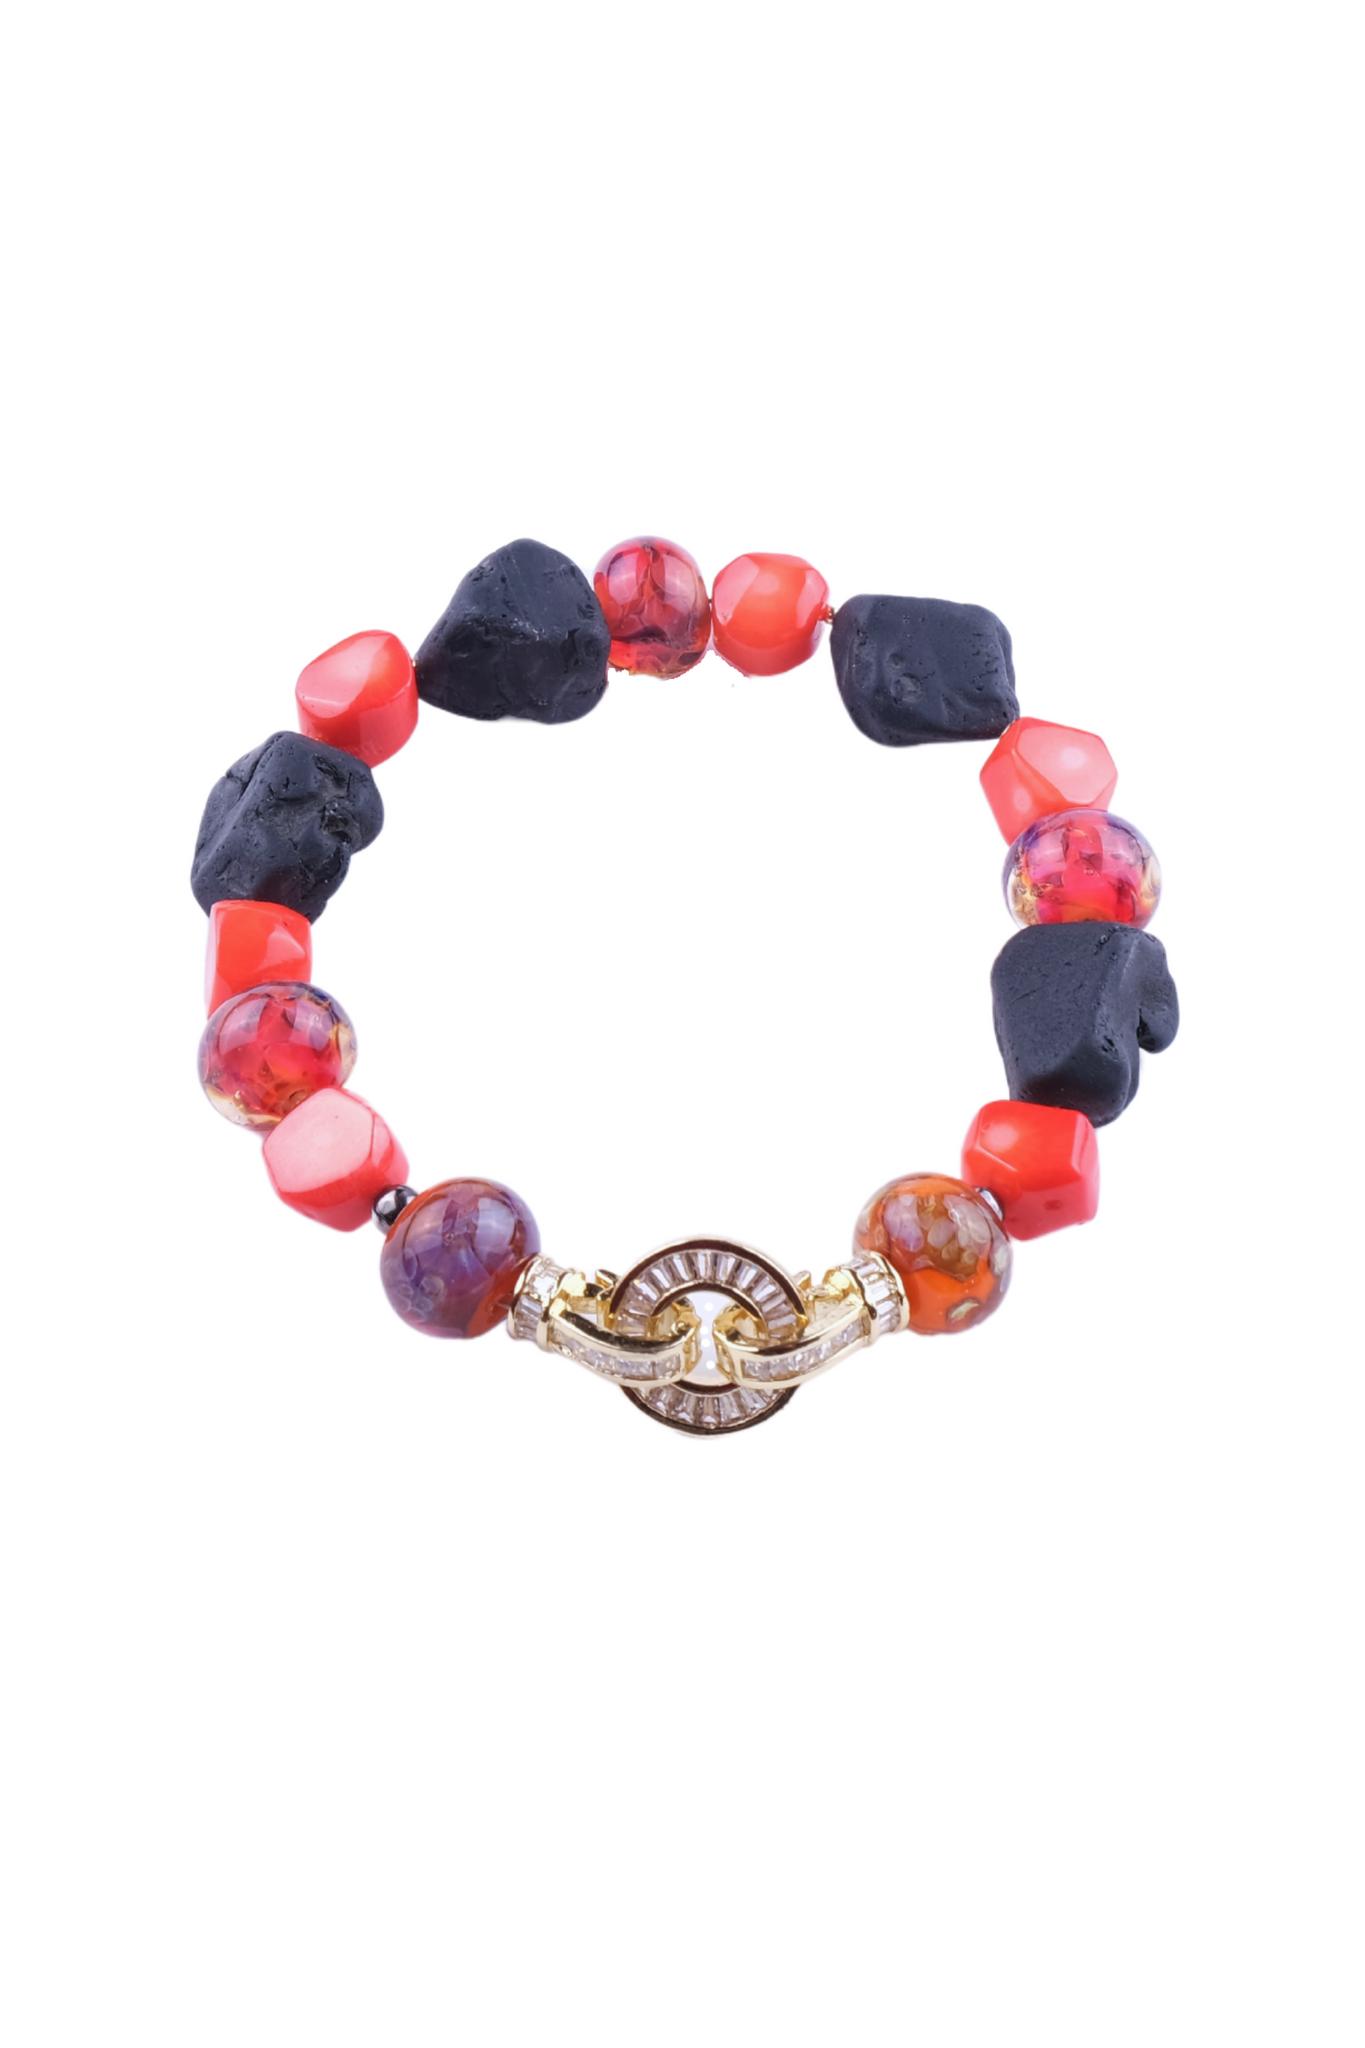 Billede af Unika armbånd i sort og rød farve - Lavasten, koral, Håndlavede glas perler